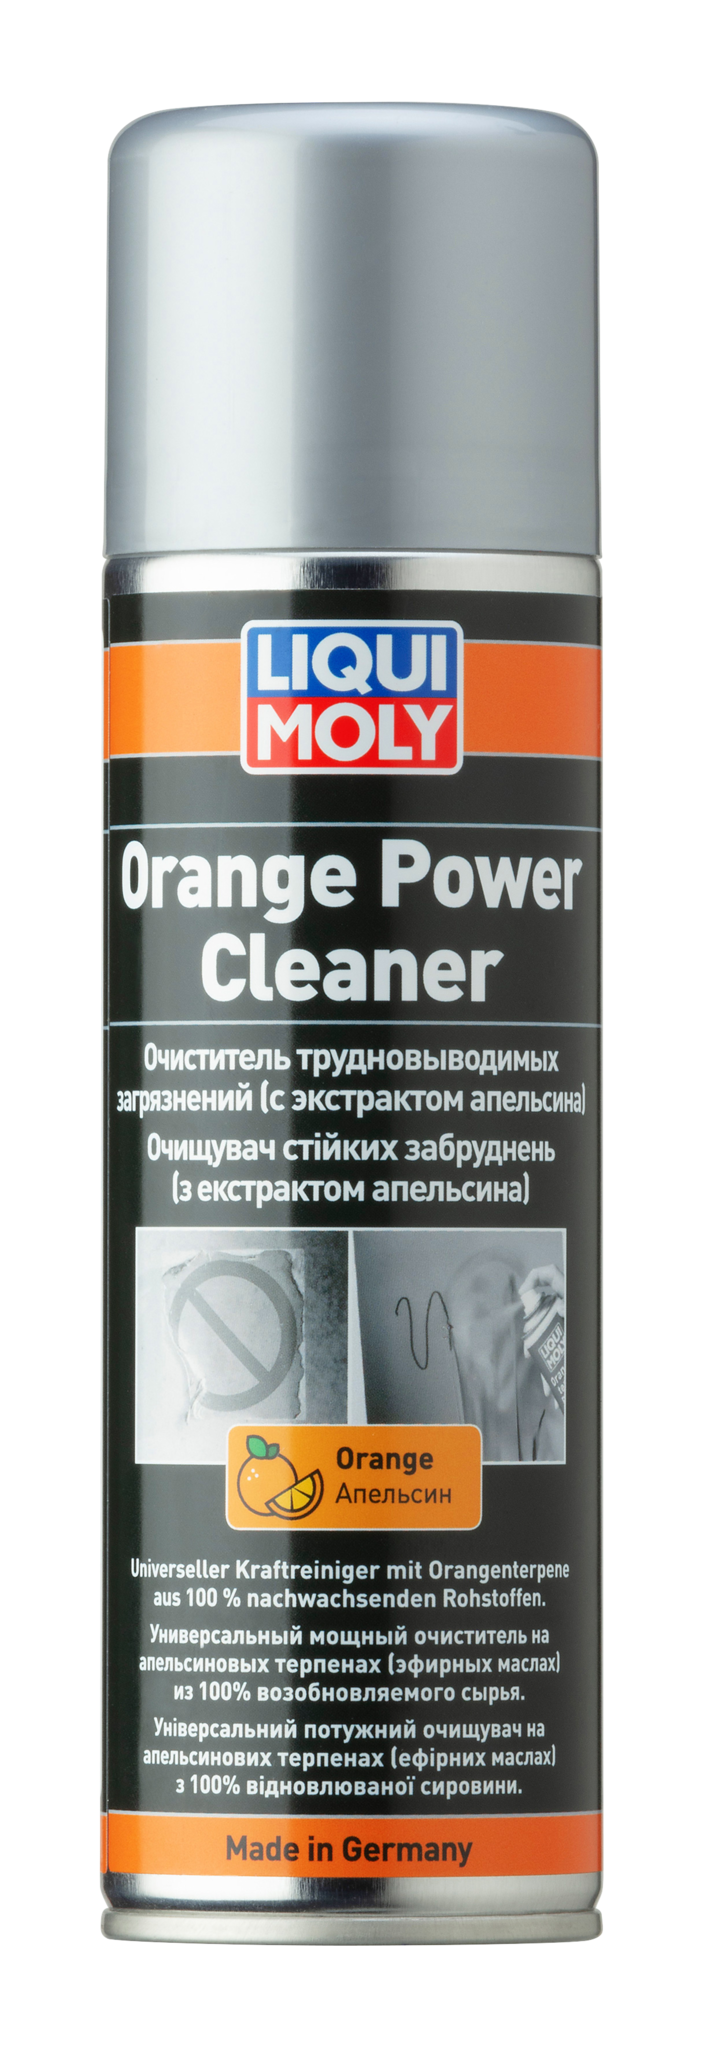 Liqui Moly Orange Power Cleaner Очиститель трудновыводимых загрязнений (с экстрактом апельсина)